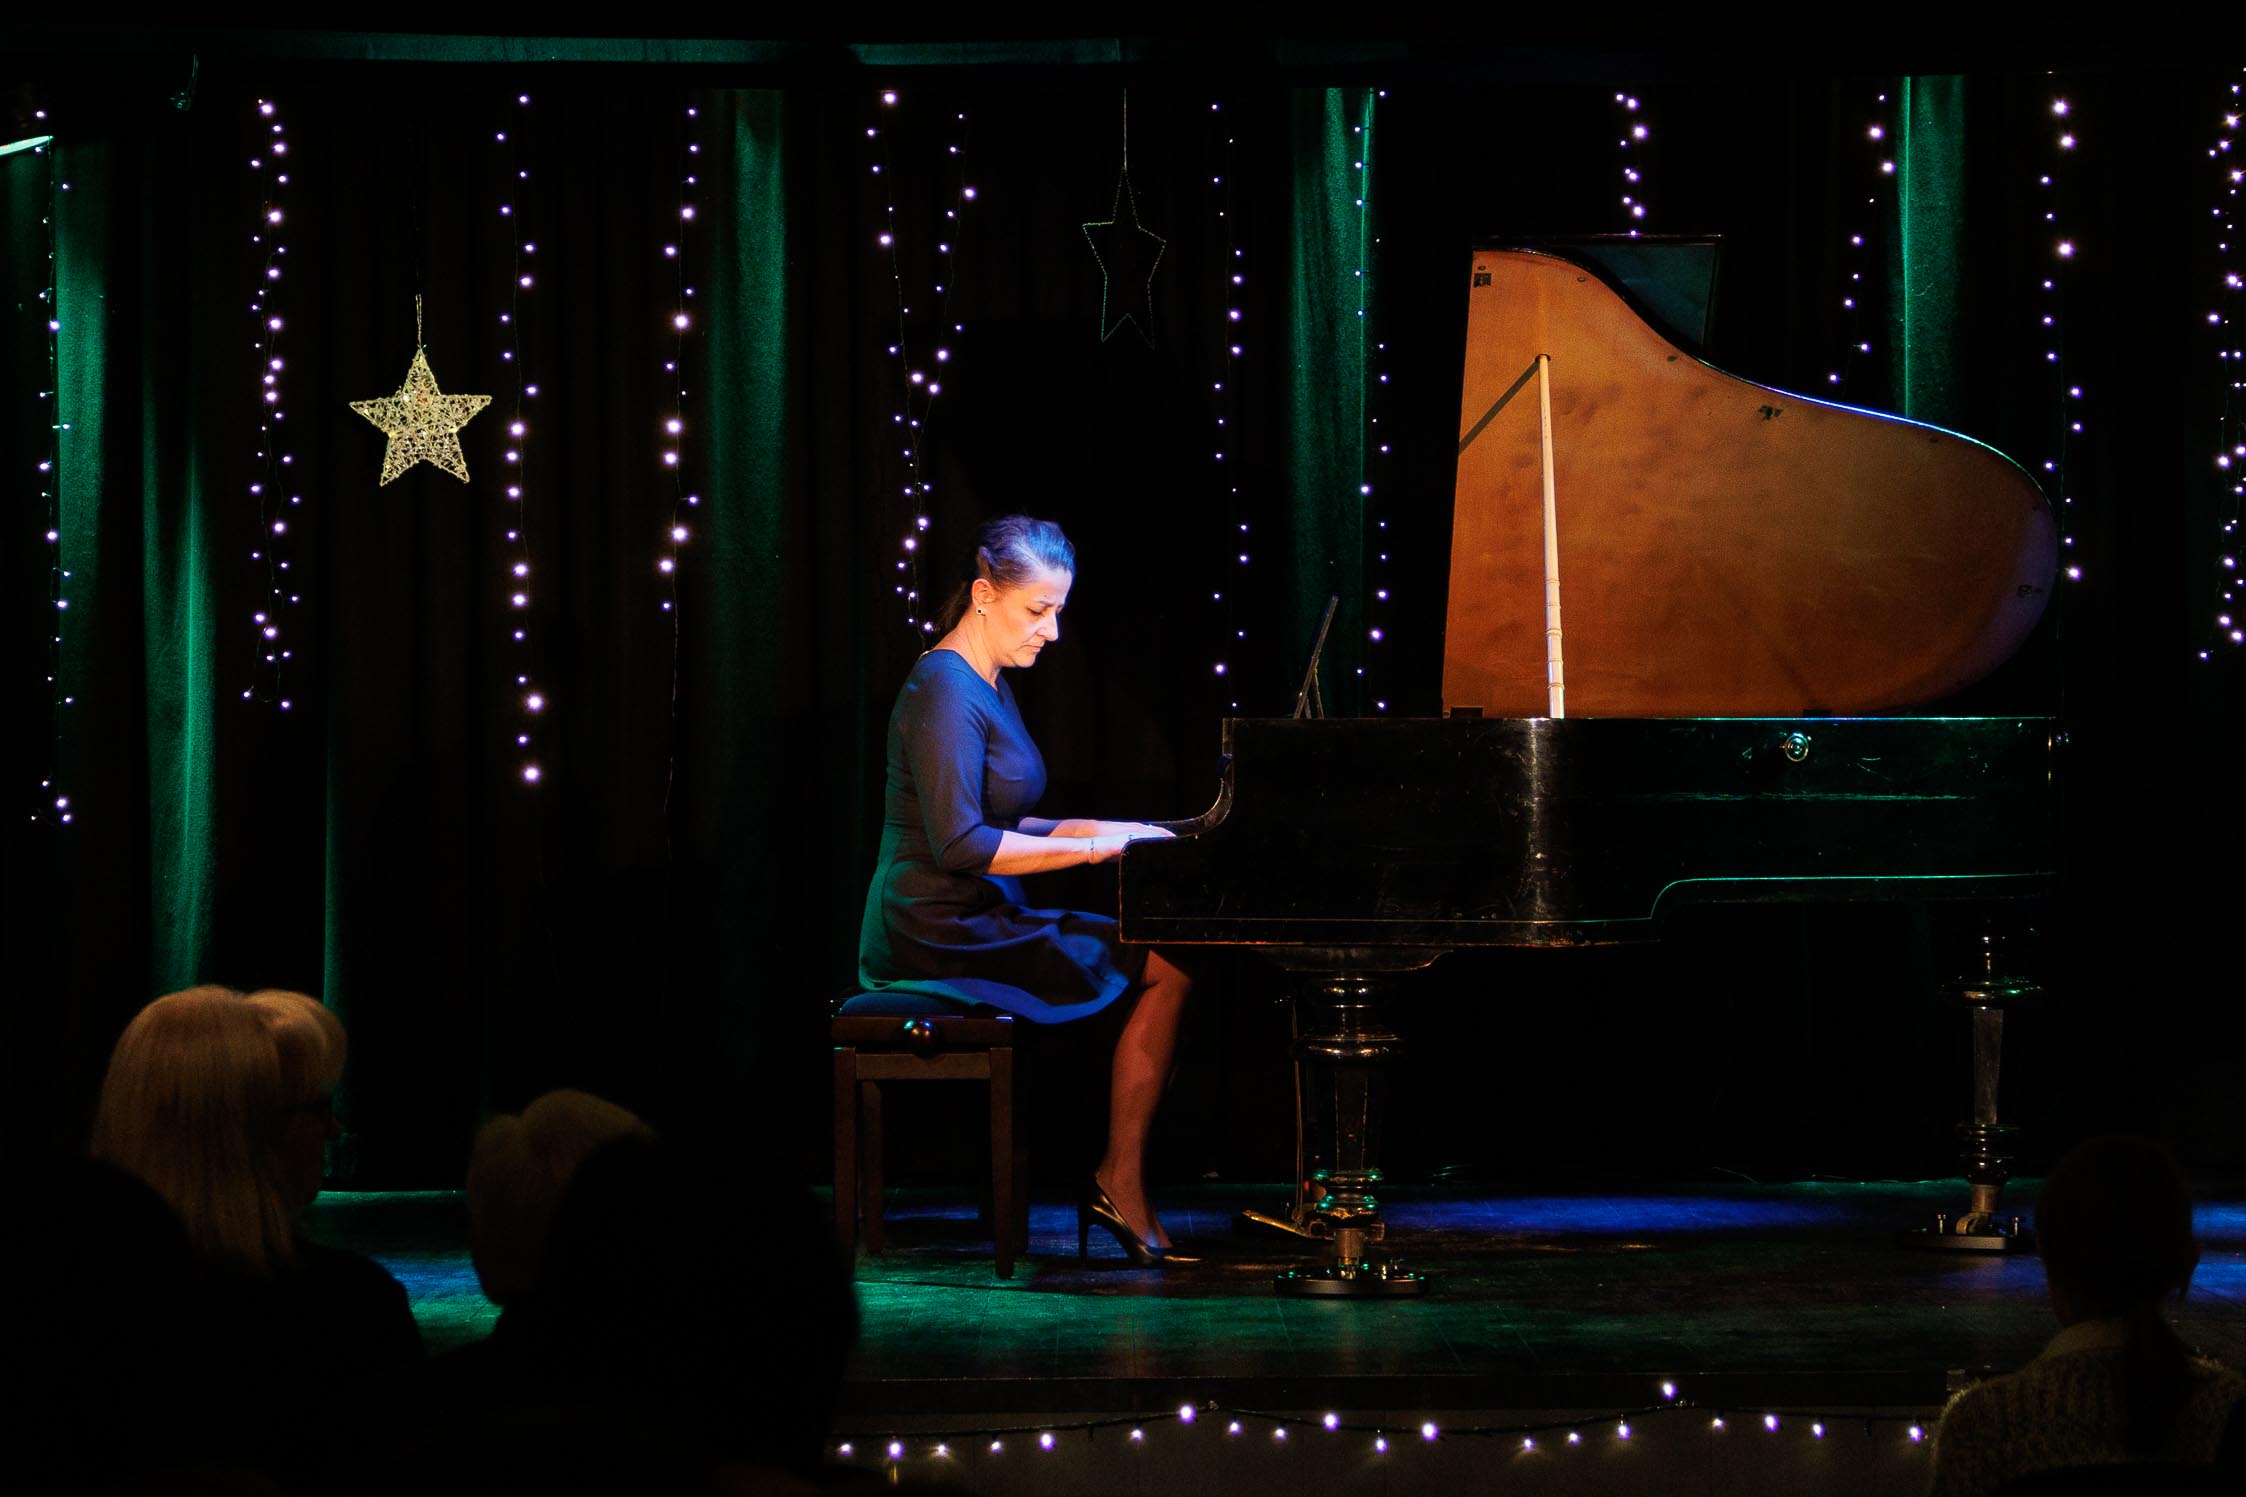 kobieta w średnim wieku gra na fortepianie, w tle kolorowa scena - dużo kolorowych światełek 